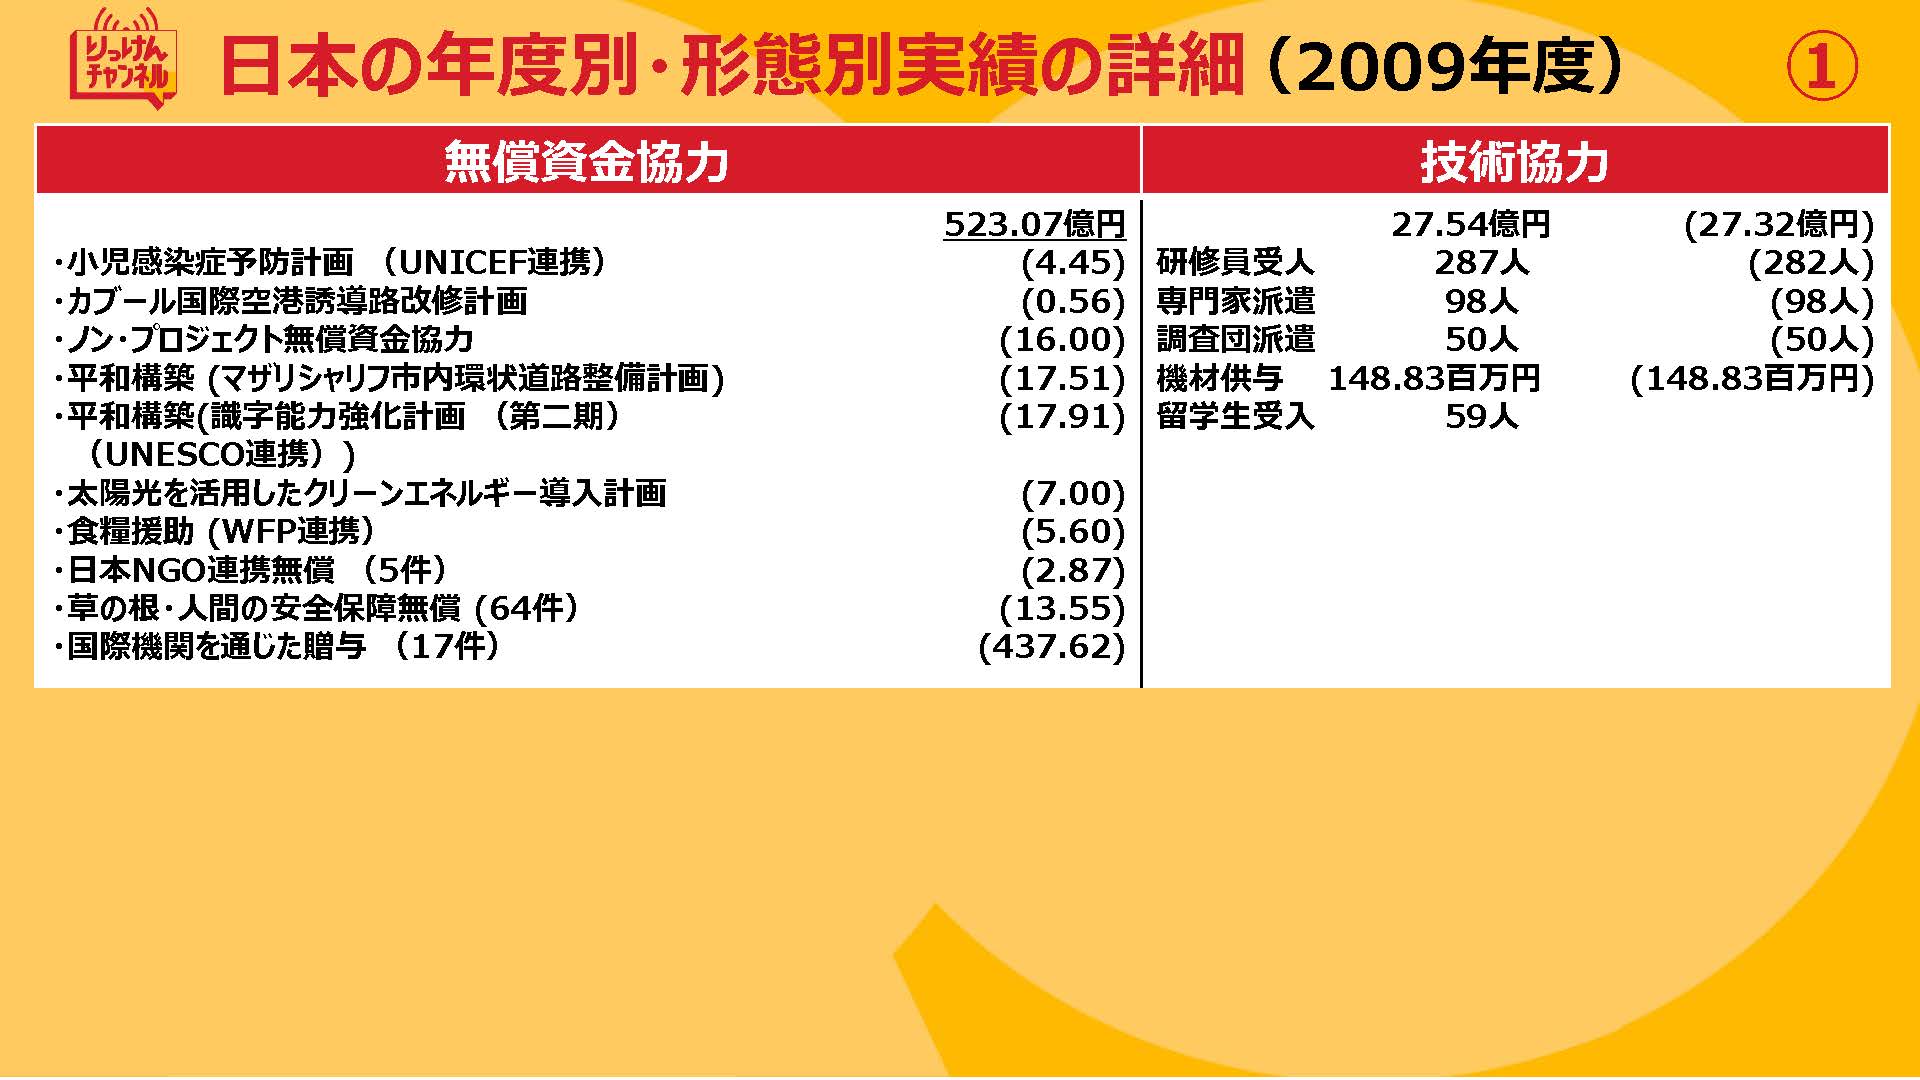 20210924_日本の年度別・形態別実績の詳細（2009~2012)_ページ_1.jpg